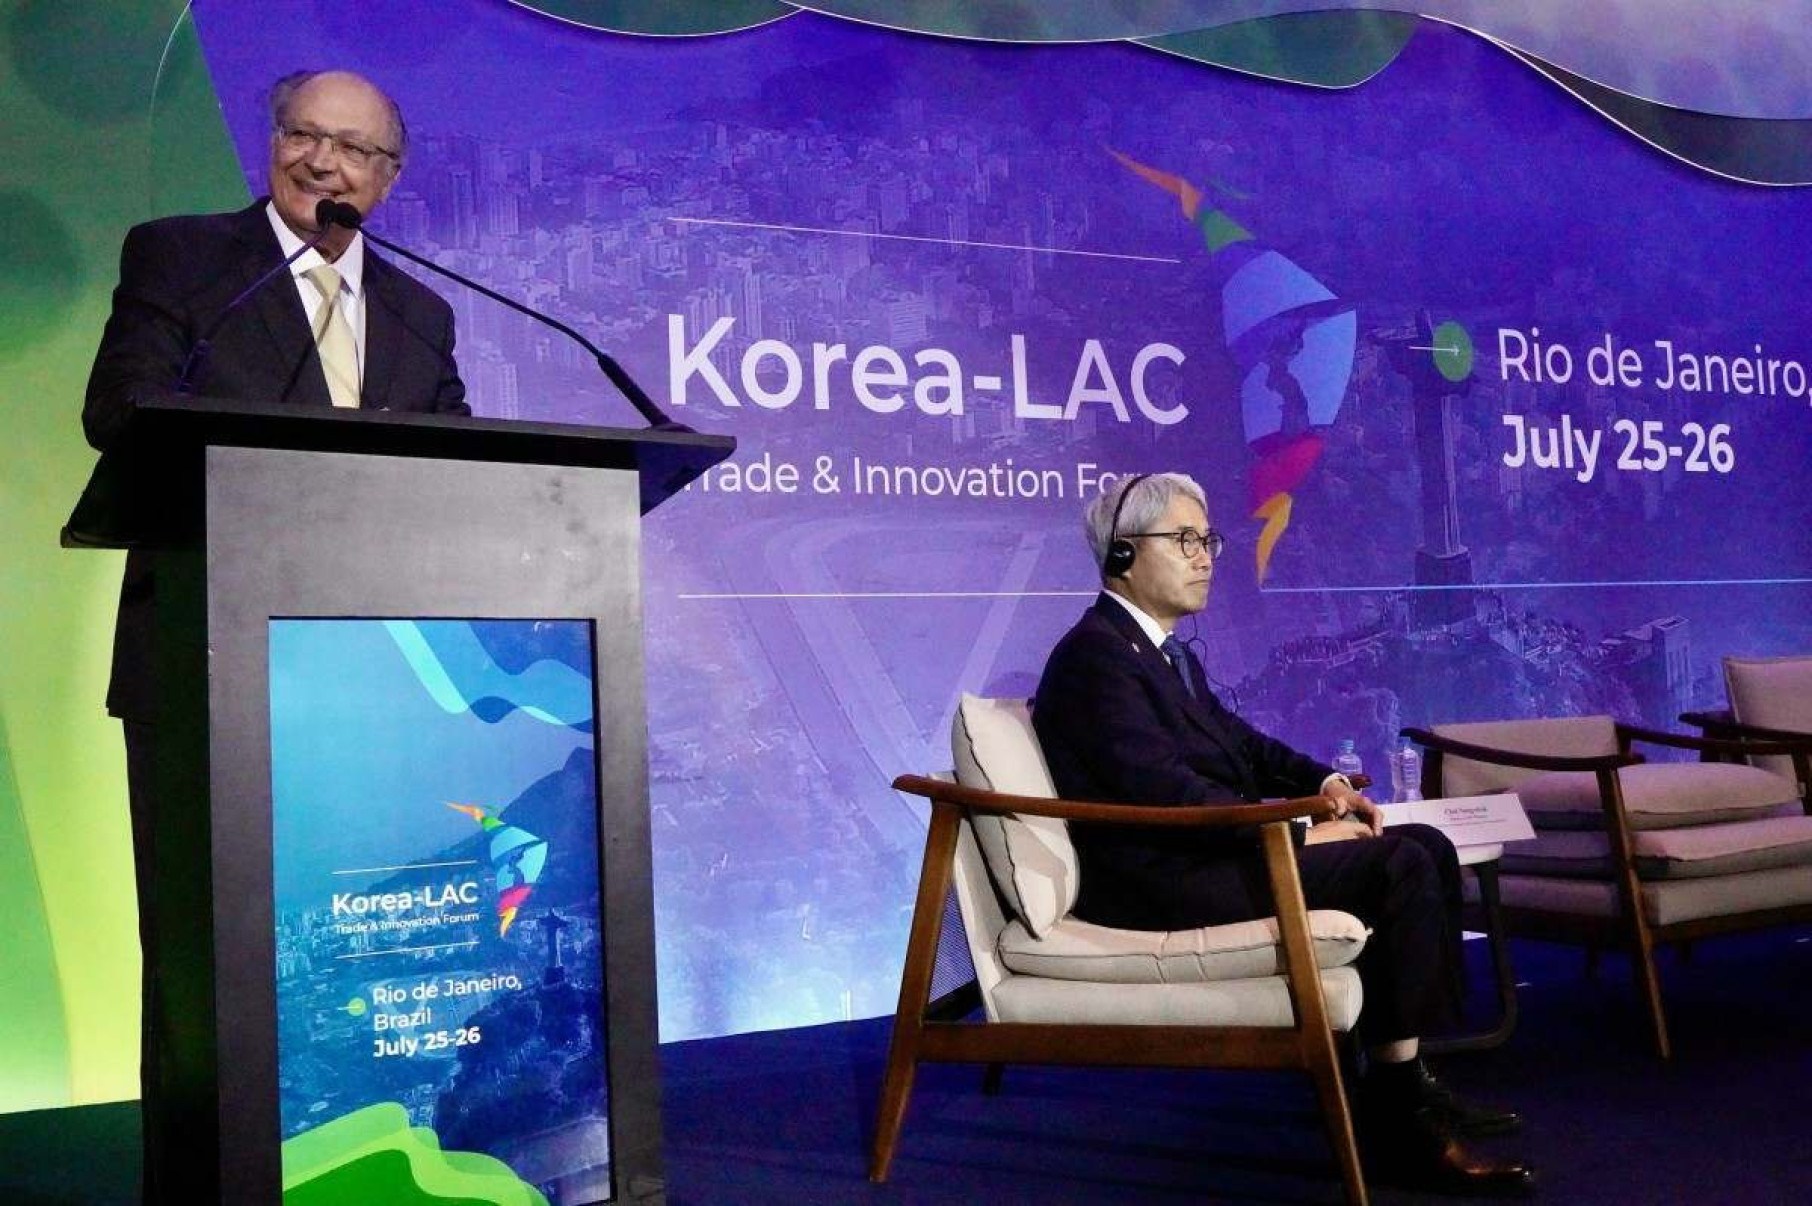 Alckmin defende que reforma aumentará exportação em fórum sobre Coreia